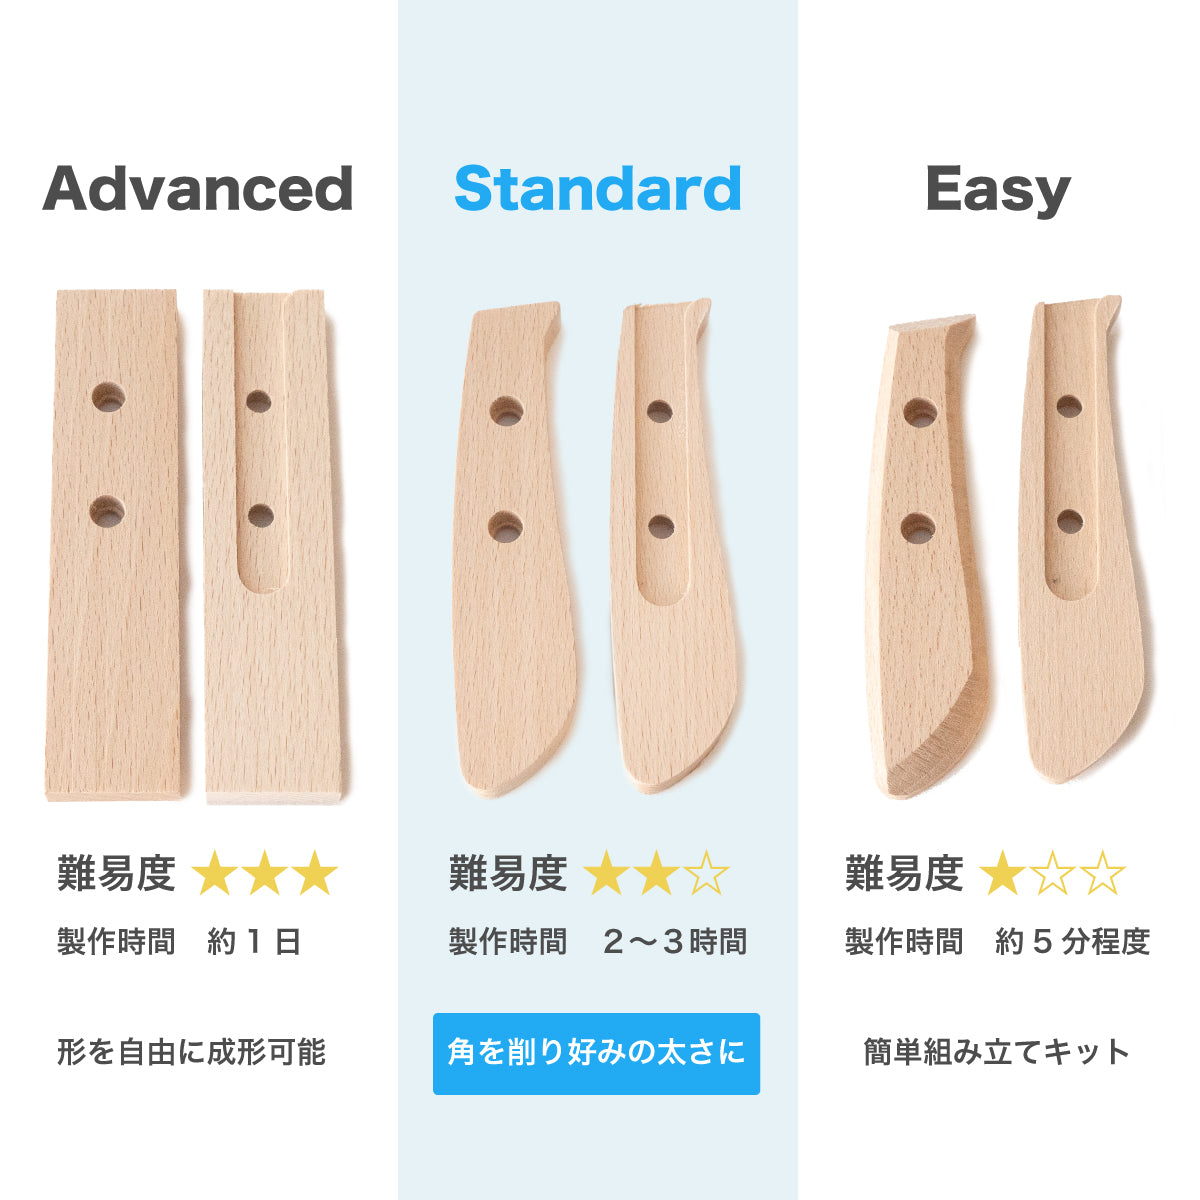 【難易度★★☆】It's my knife KIBORI Standard 5,720円